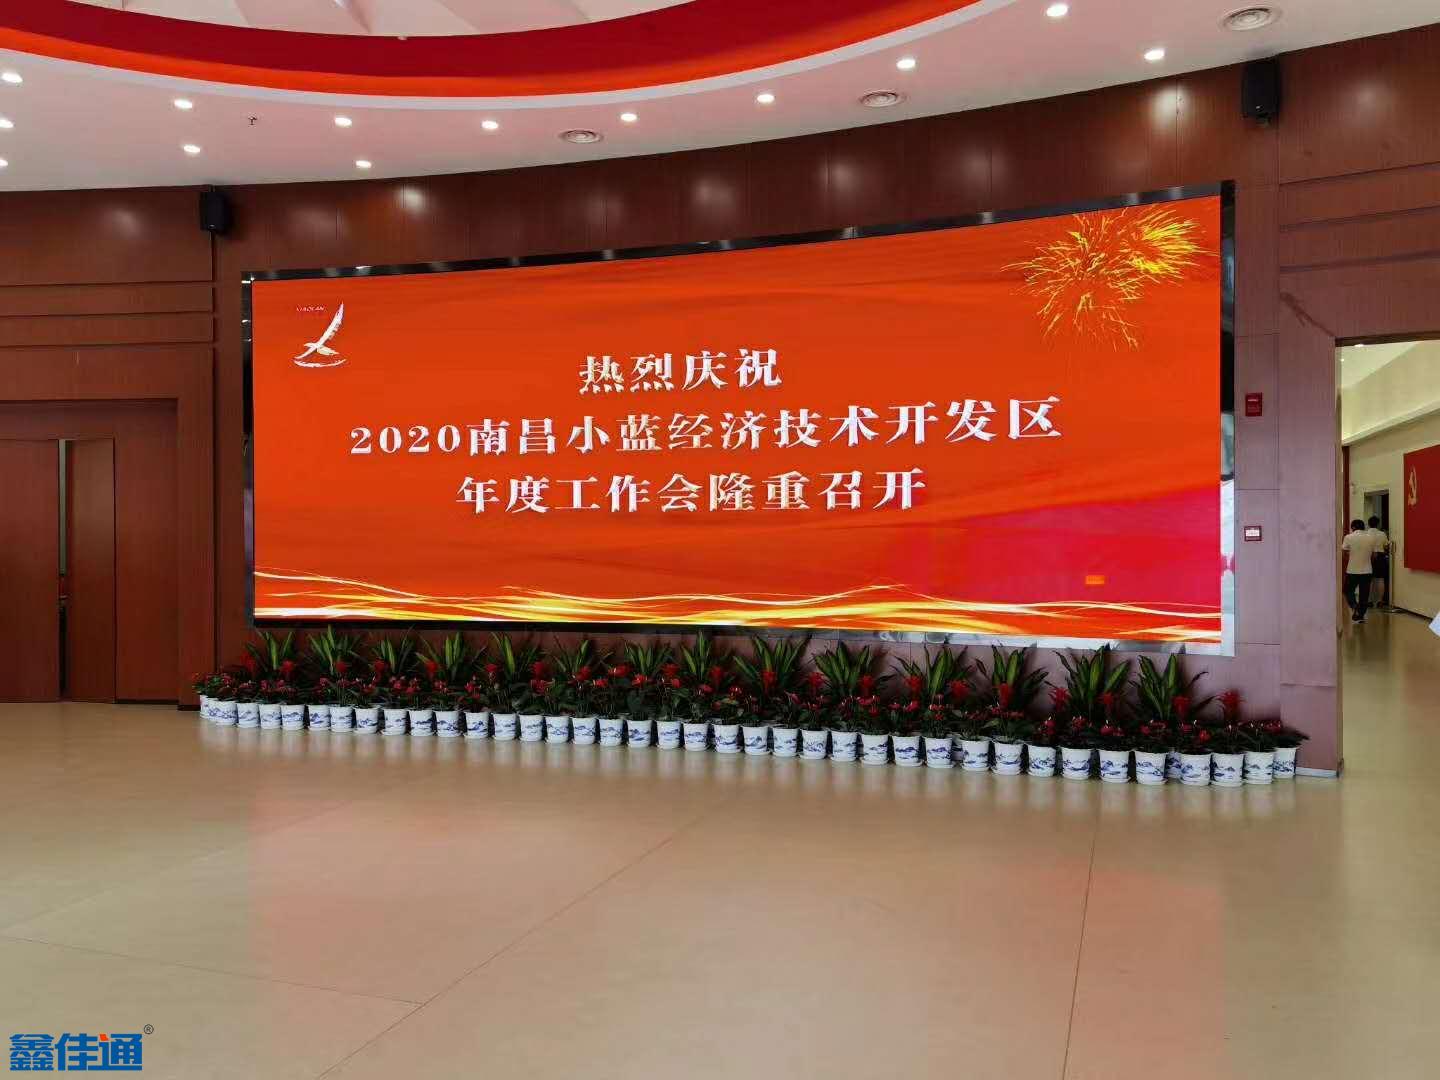 2020南昌小蓝经济开发区年度工作会